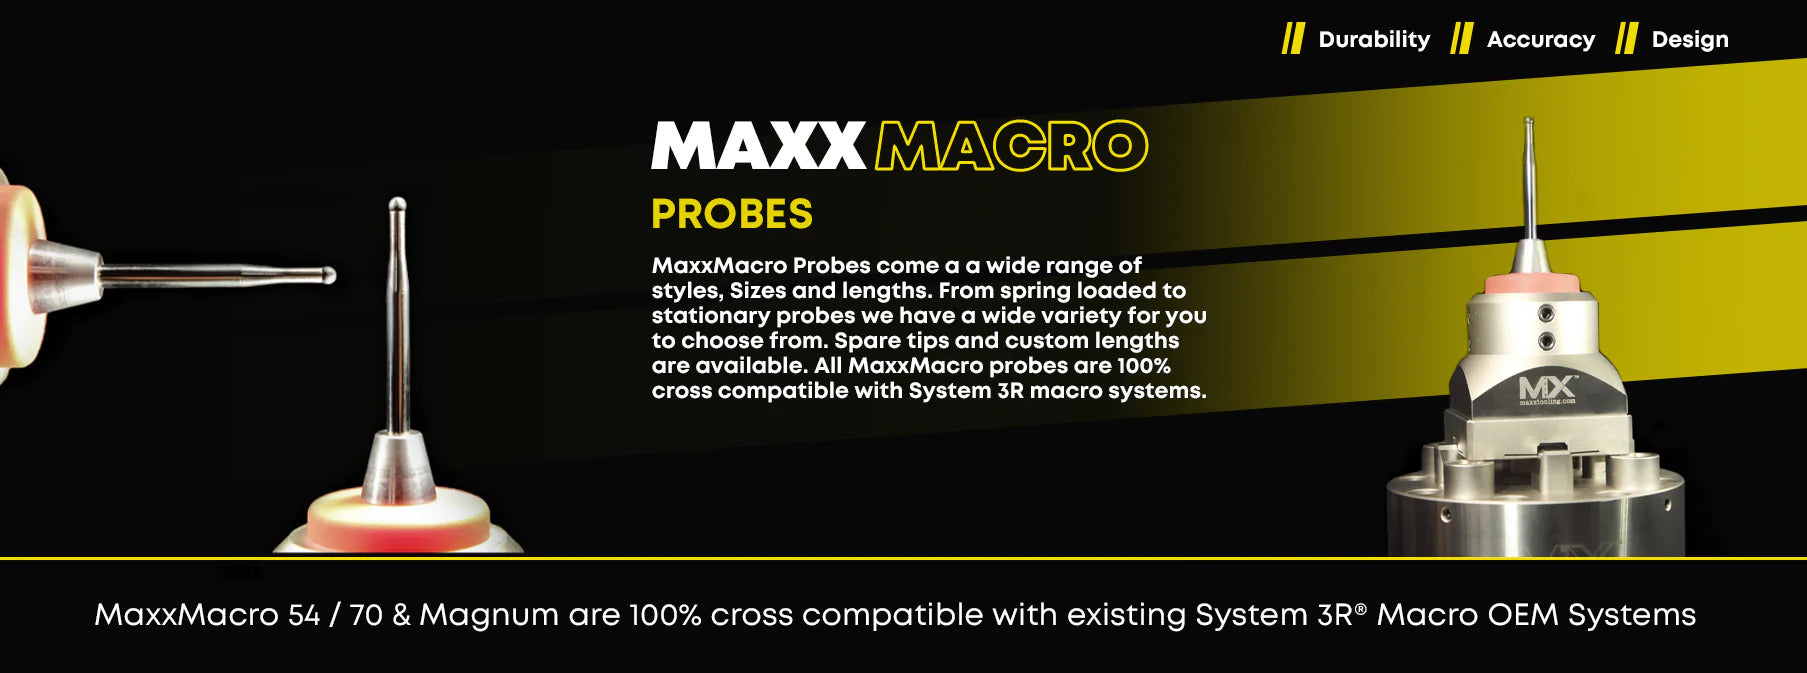 MaxxMacro Probes